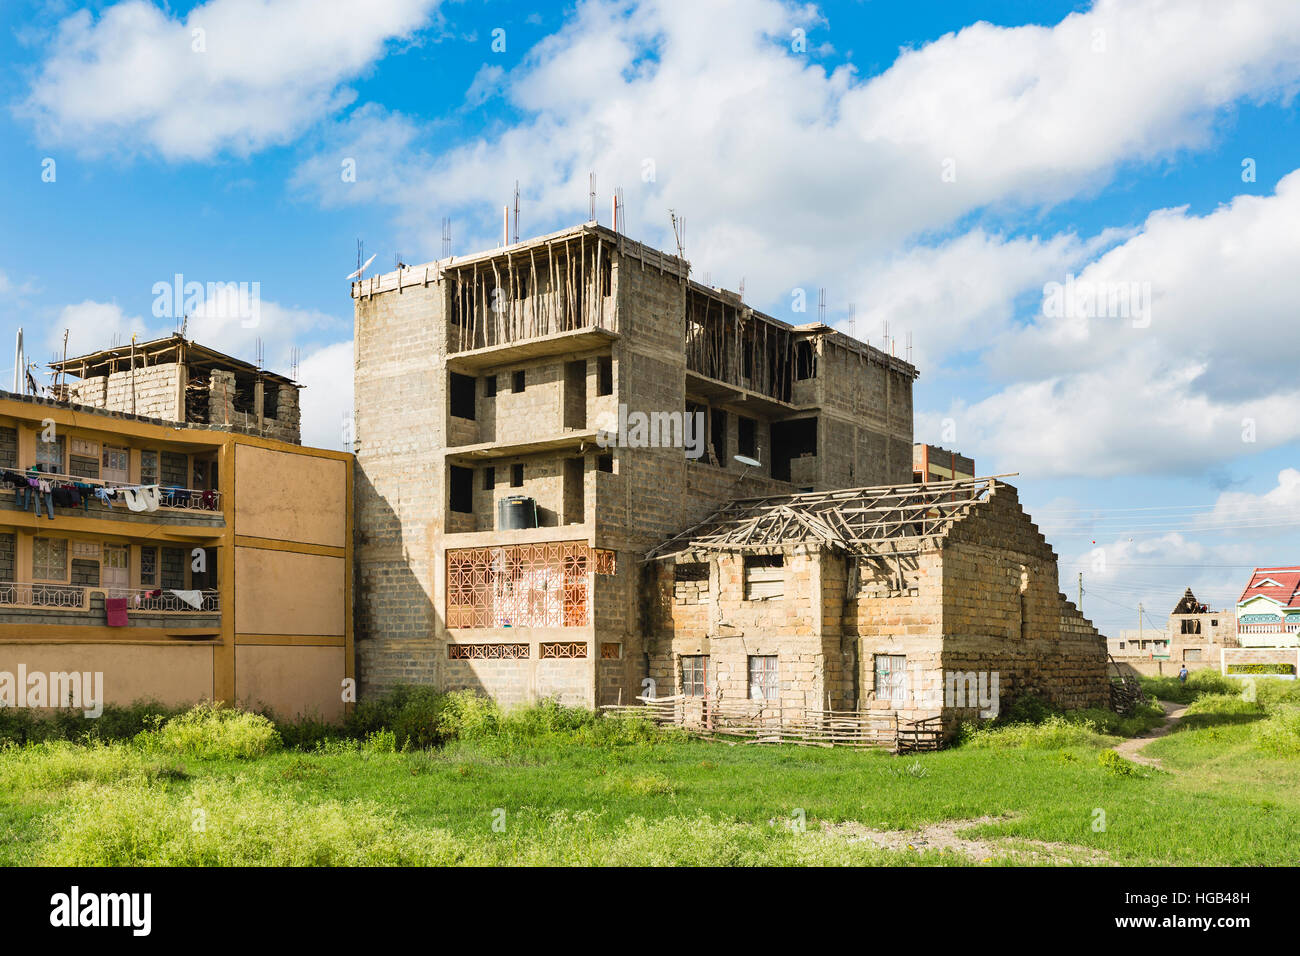 Une ruine à côté d'un bâtiment en construction, une vue typique dans le village de Tassia dans l'Est de Nairobi, Kenya. Banque D'Images